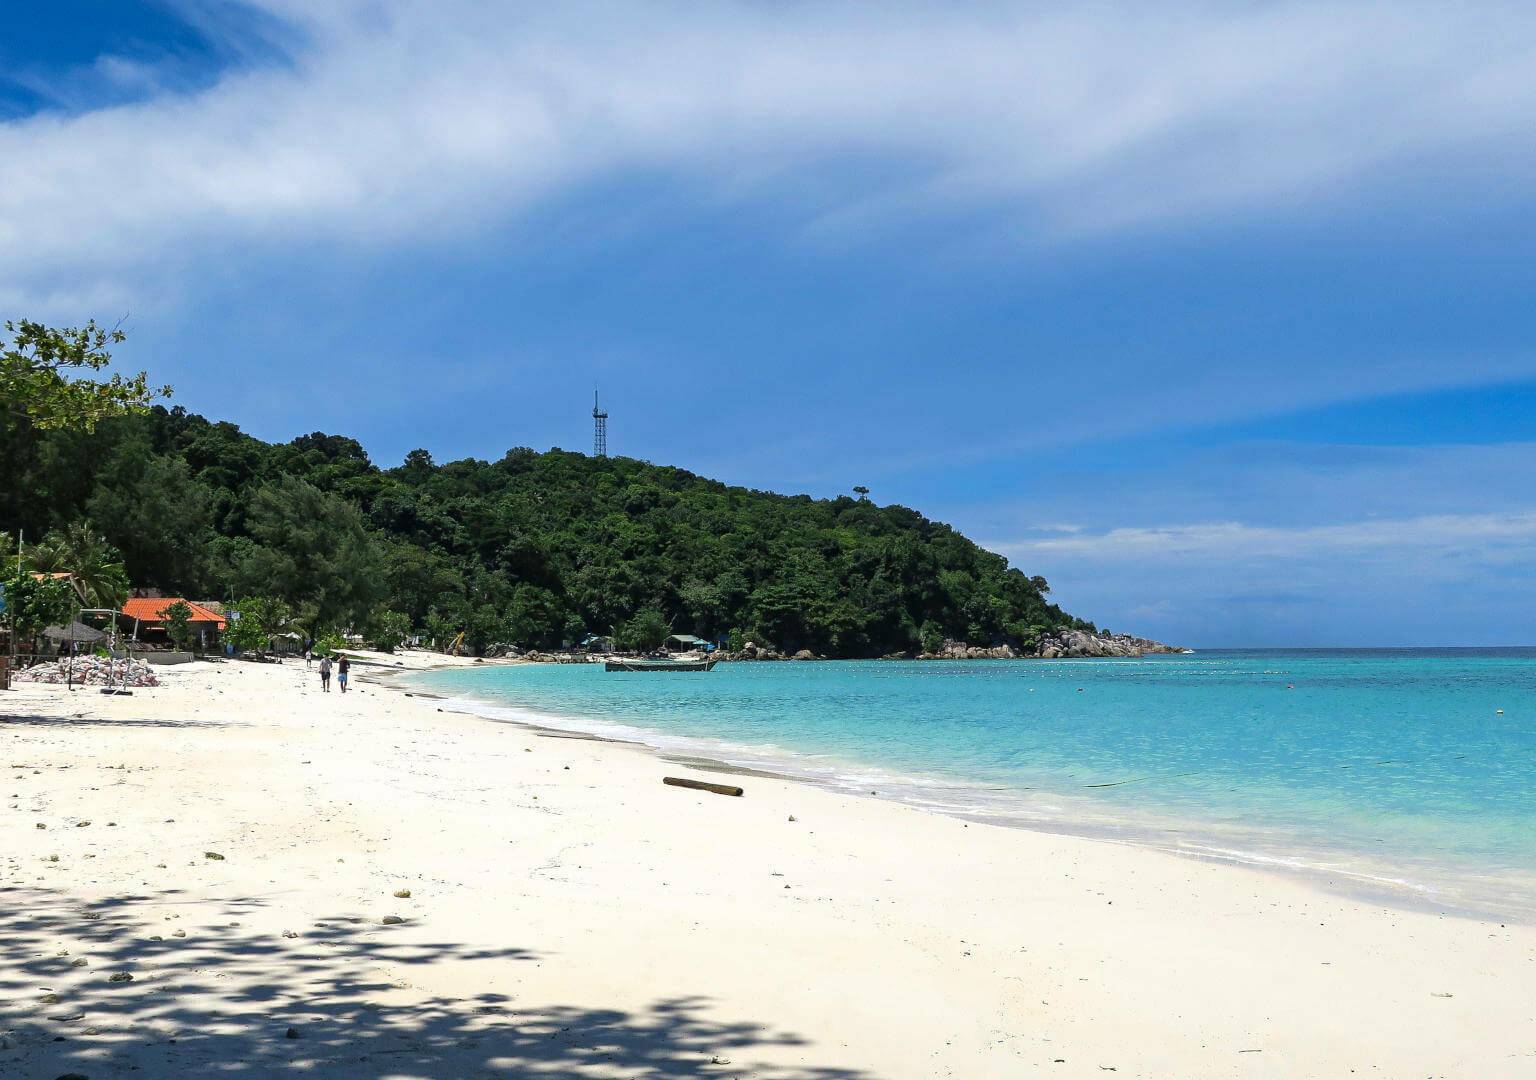 Pattaya Beach ist einer der schönsten Strände in Thailand und erstreckt sich über 1,5 km am Meer entlang.